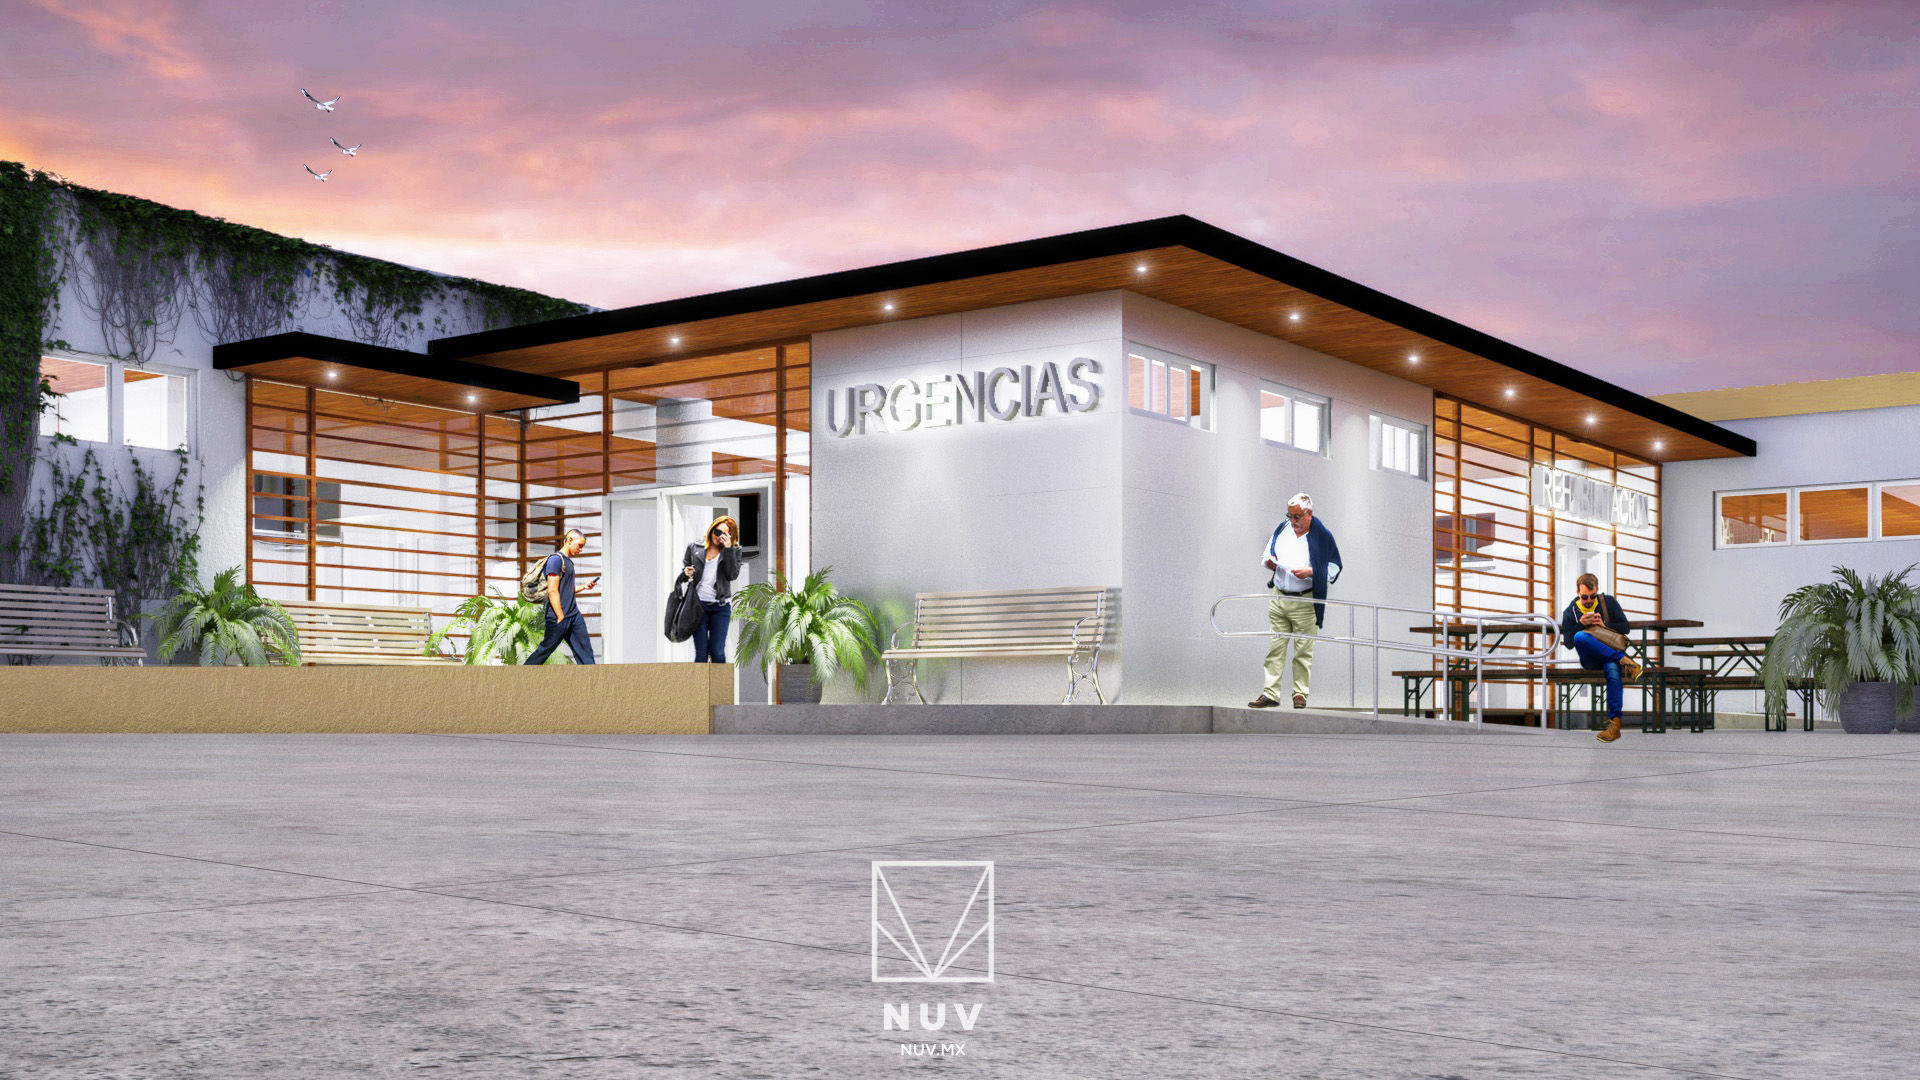 Urgencias ISSSTE, NUV Arquitectura NUV Arquitectura Commercial spaces Hospitals